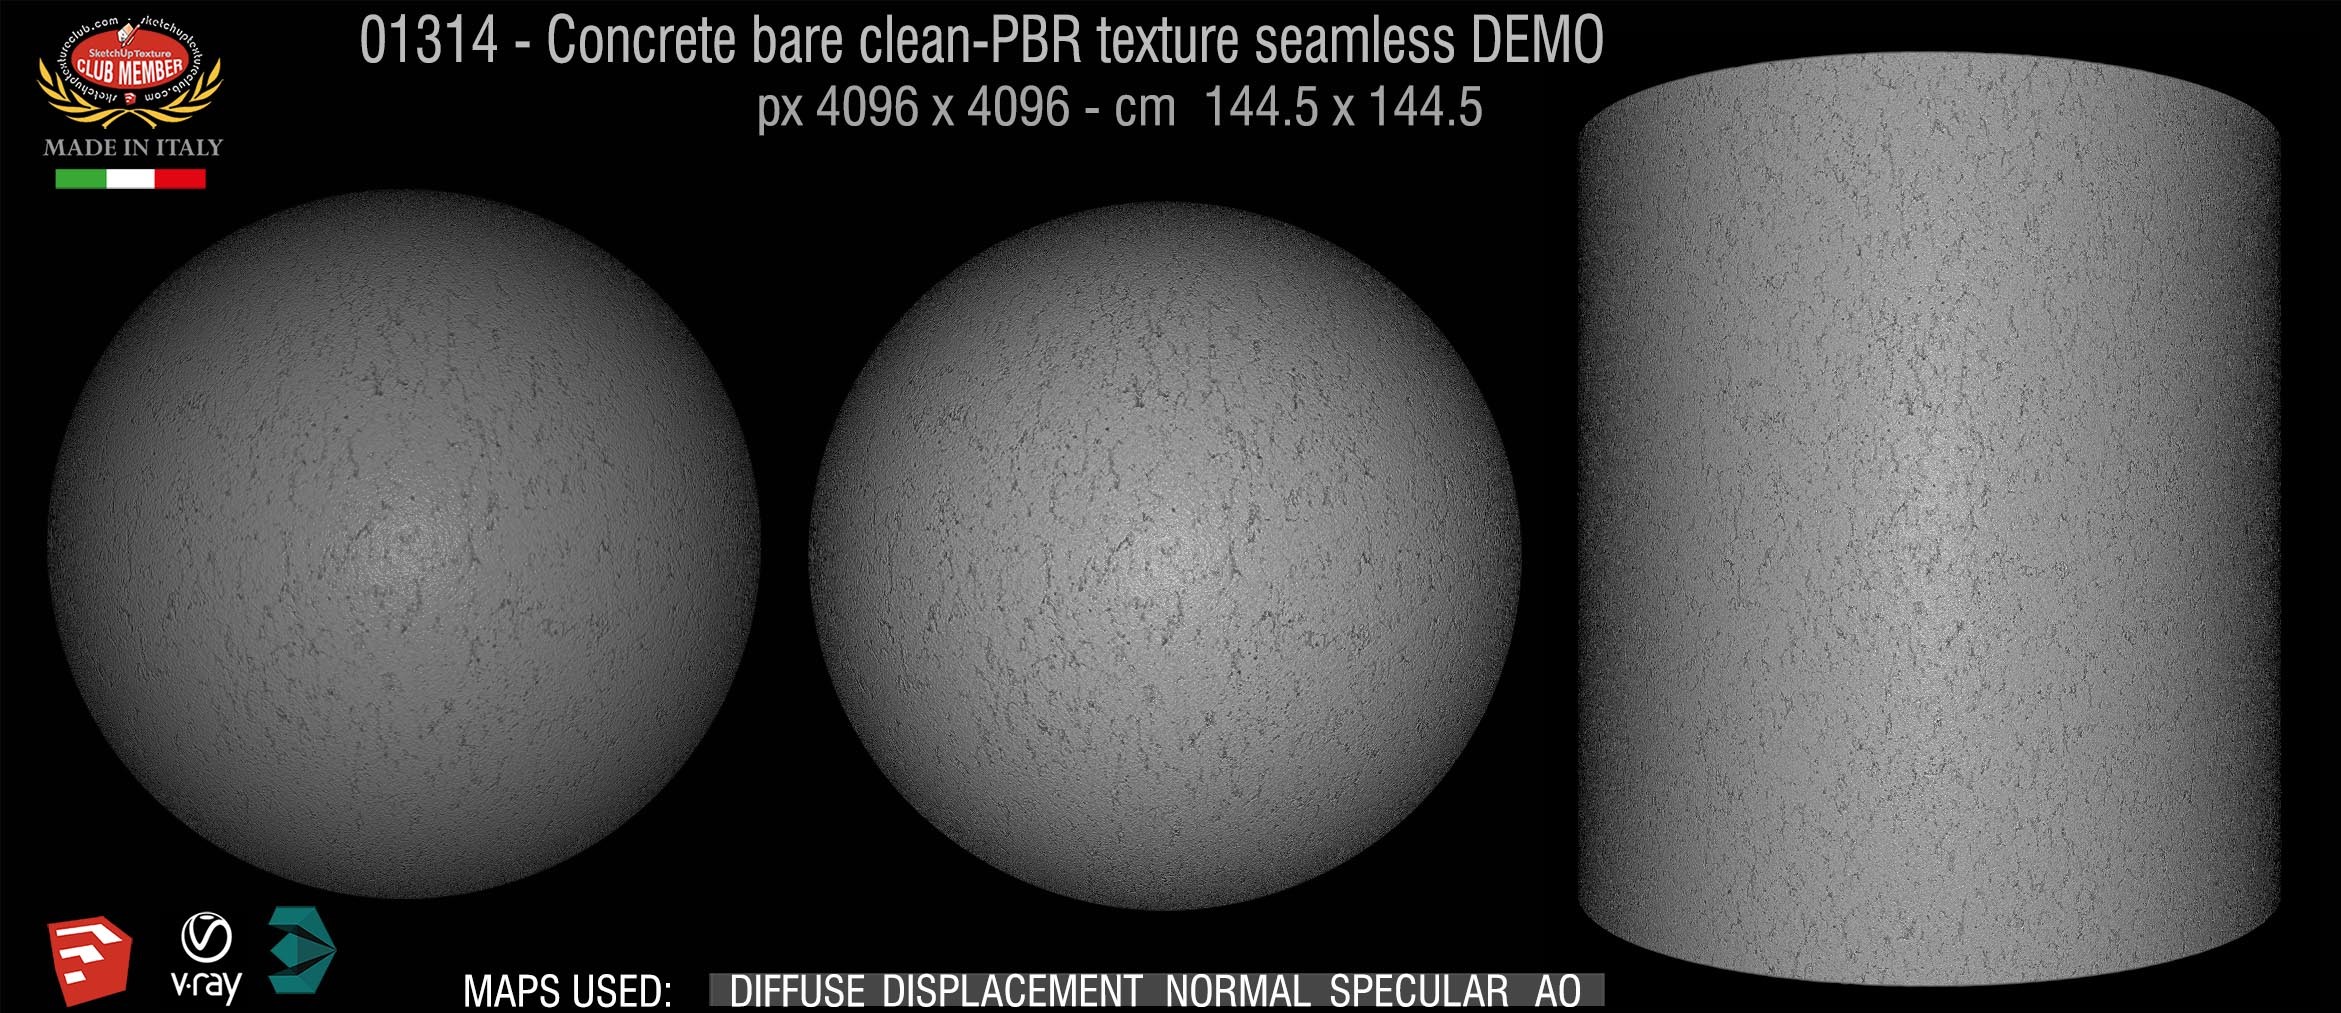 01314 Concrete bare clean-PBR texture seamless DEMO